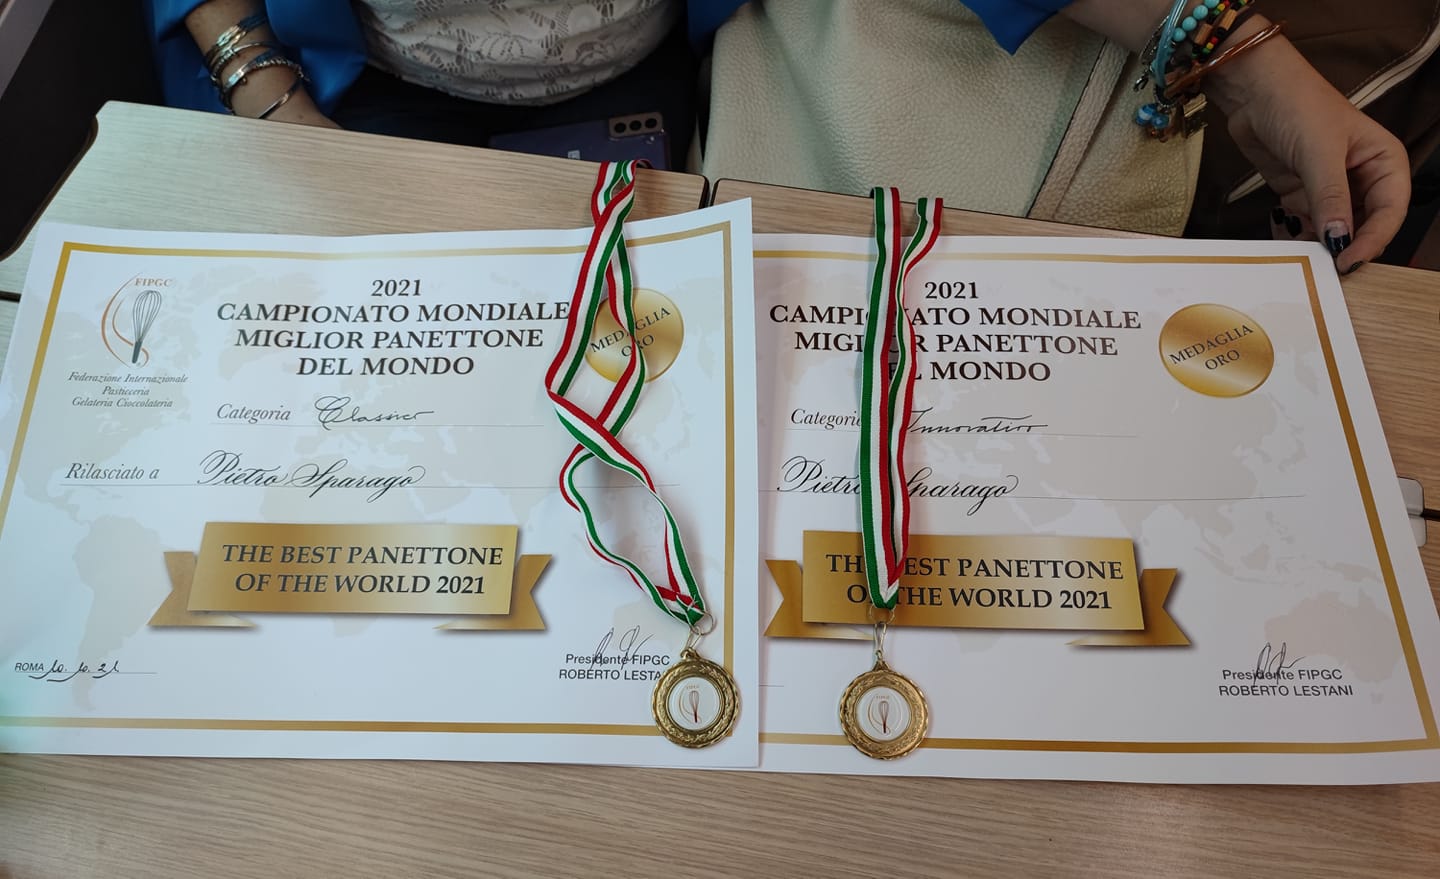 Il maestro pasticciere Pietro Sparago due volte medaglia d’oro al Campionato mondiale “The best panettone of the world 2021”